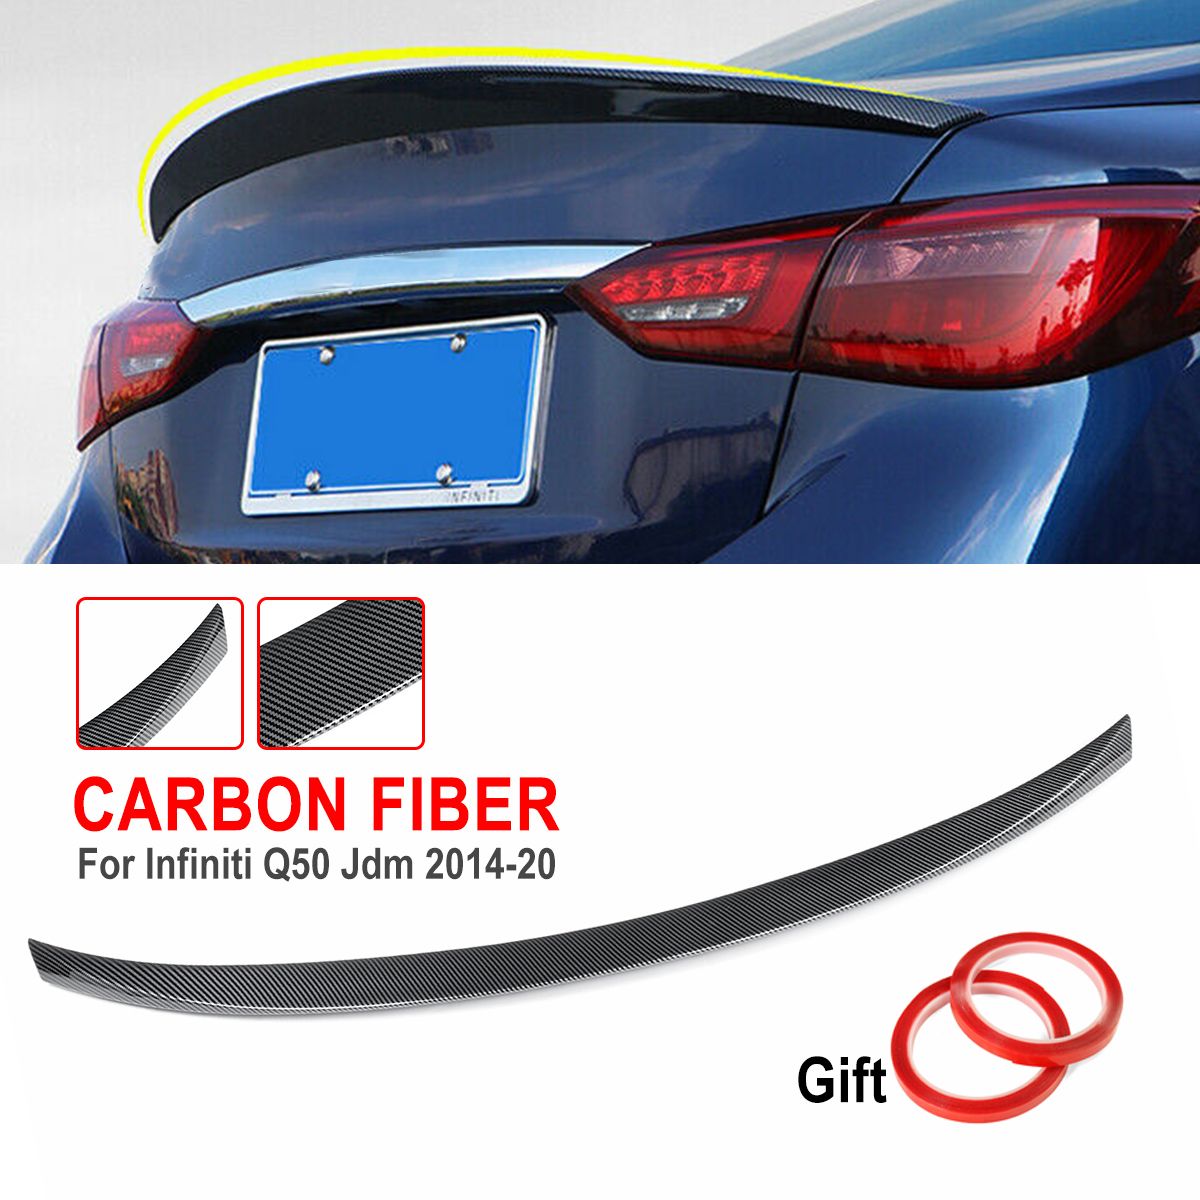 Car-Carbon-Fiber-Style-Rear-Trunk-Spoiler-Splitter-Wing-For-Infiniti-Q50-Jdm-2014-2020-1656003